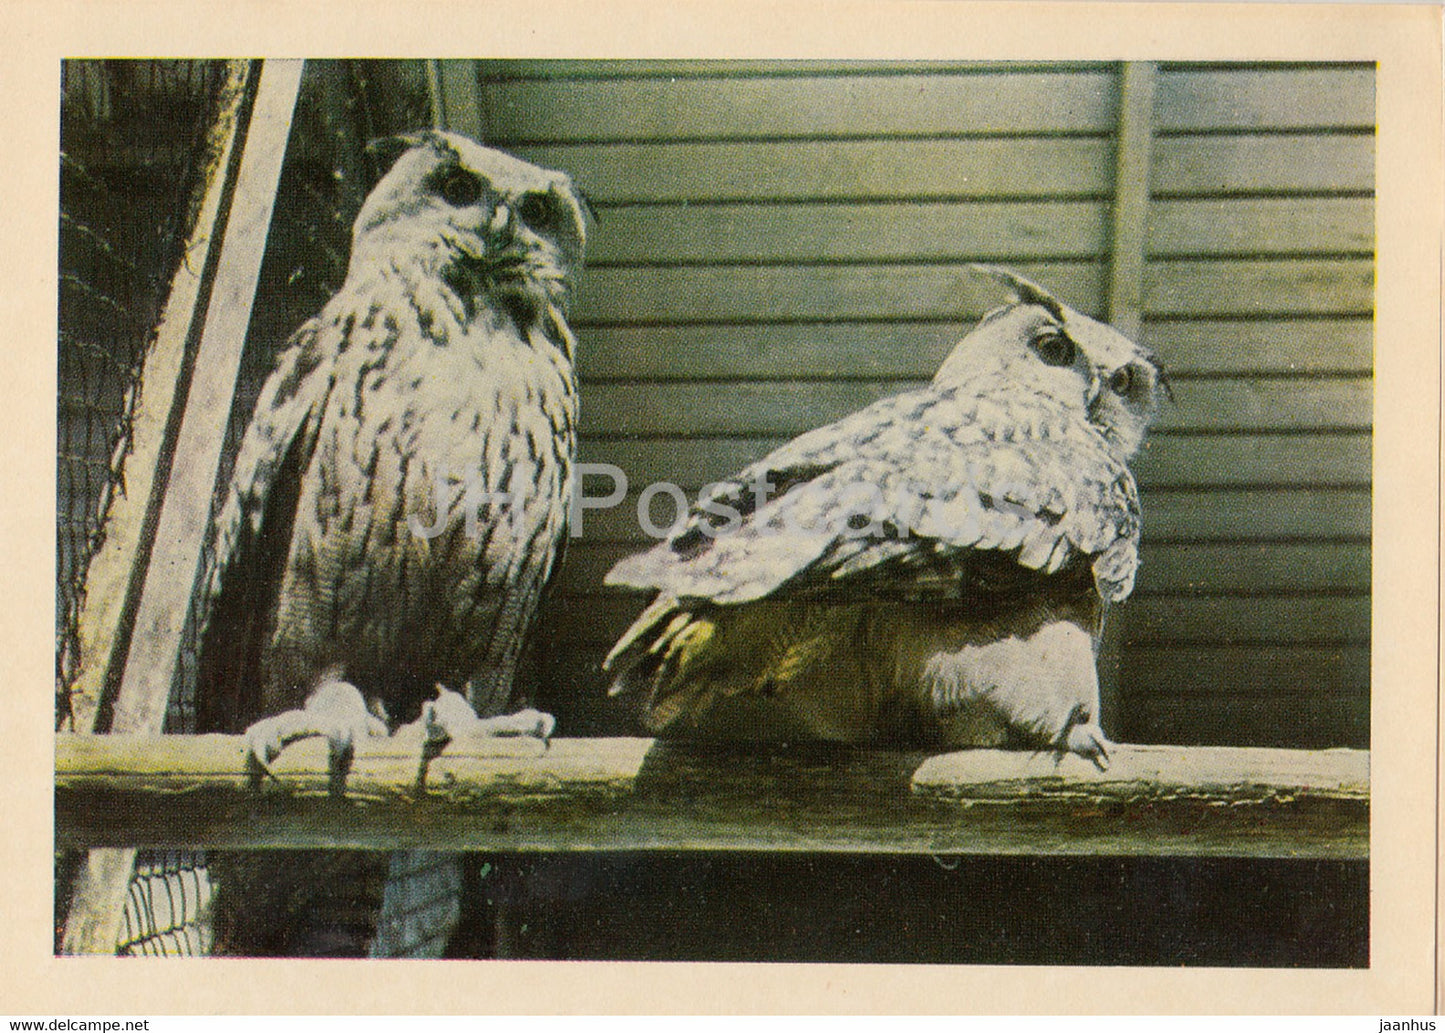 Riga Zoo - Eurasian eagle-owl - Bubo bubo - birds - Latvia USSR - unused - JH Postcards